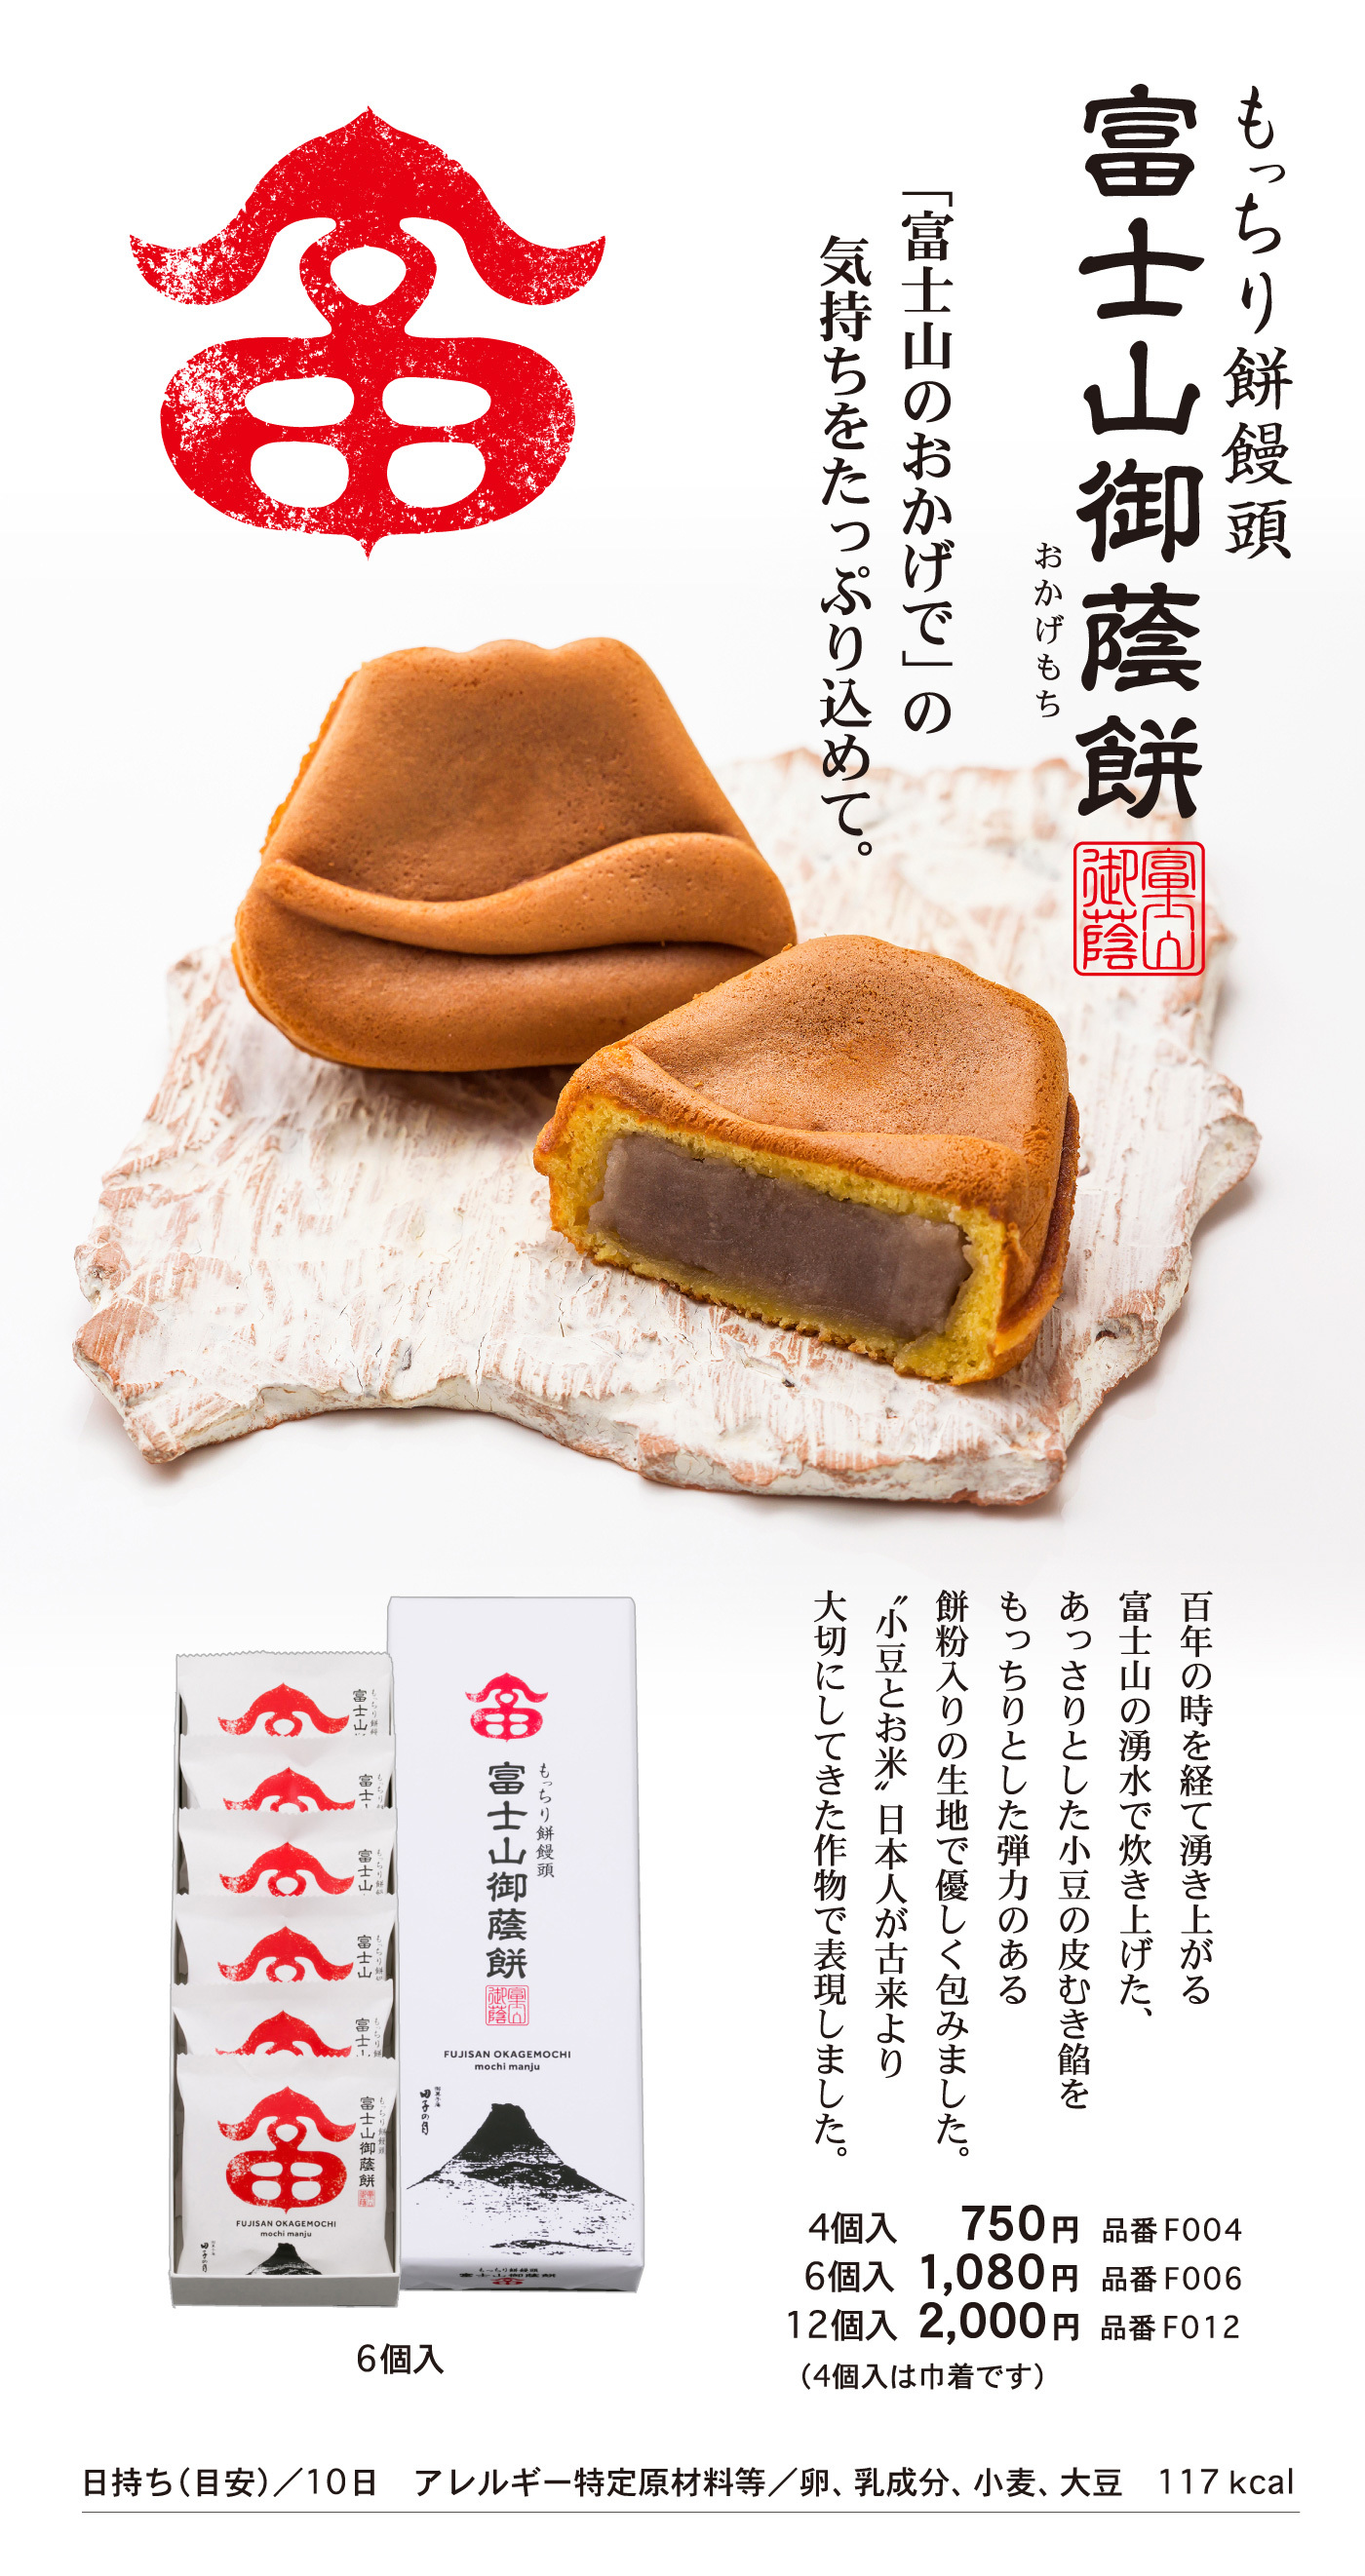 もっちり餅饅頭富士山御蔭(おかげ)餅(もち)「富士山のおかげで」の気持ちをたっぷり込めて。百年の時を経て湧き上がる富士山の湧水で炊き上げた、あっさりとした小豆の皮むき餡をもっちりとした弾力のある餅個入りの生地で優しく包みました。“小豆とお米”日本人が古来より大切にしてきた作物で表現しました。6個入4個入750円品番F0046個入1,080円品番F00612個入2,000円品番F012（4個入は巾着です）日持ち（目安）/10日アレルギー特定原材料等/卵、乳成分、小麦、大豆117kcal